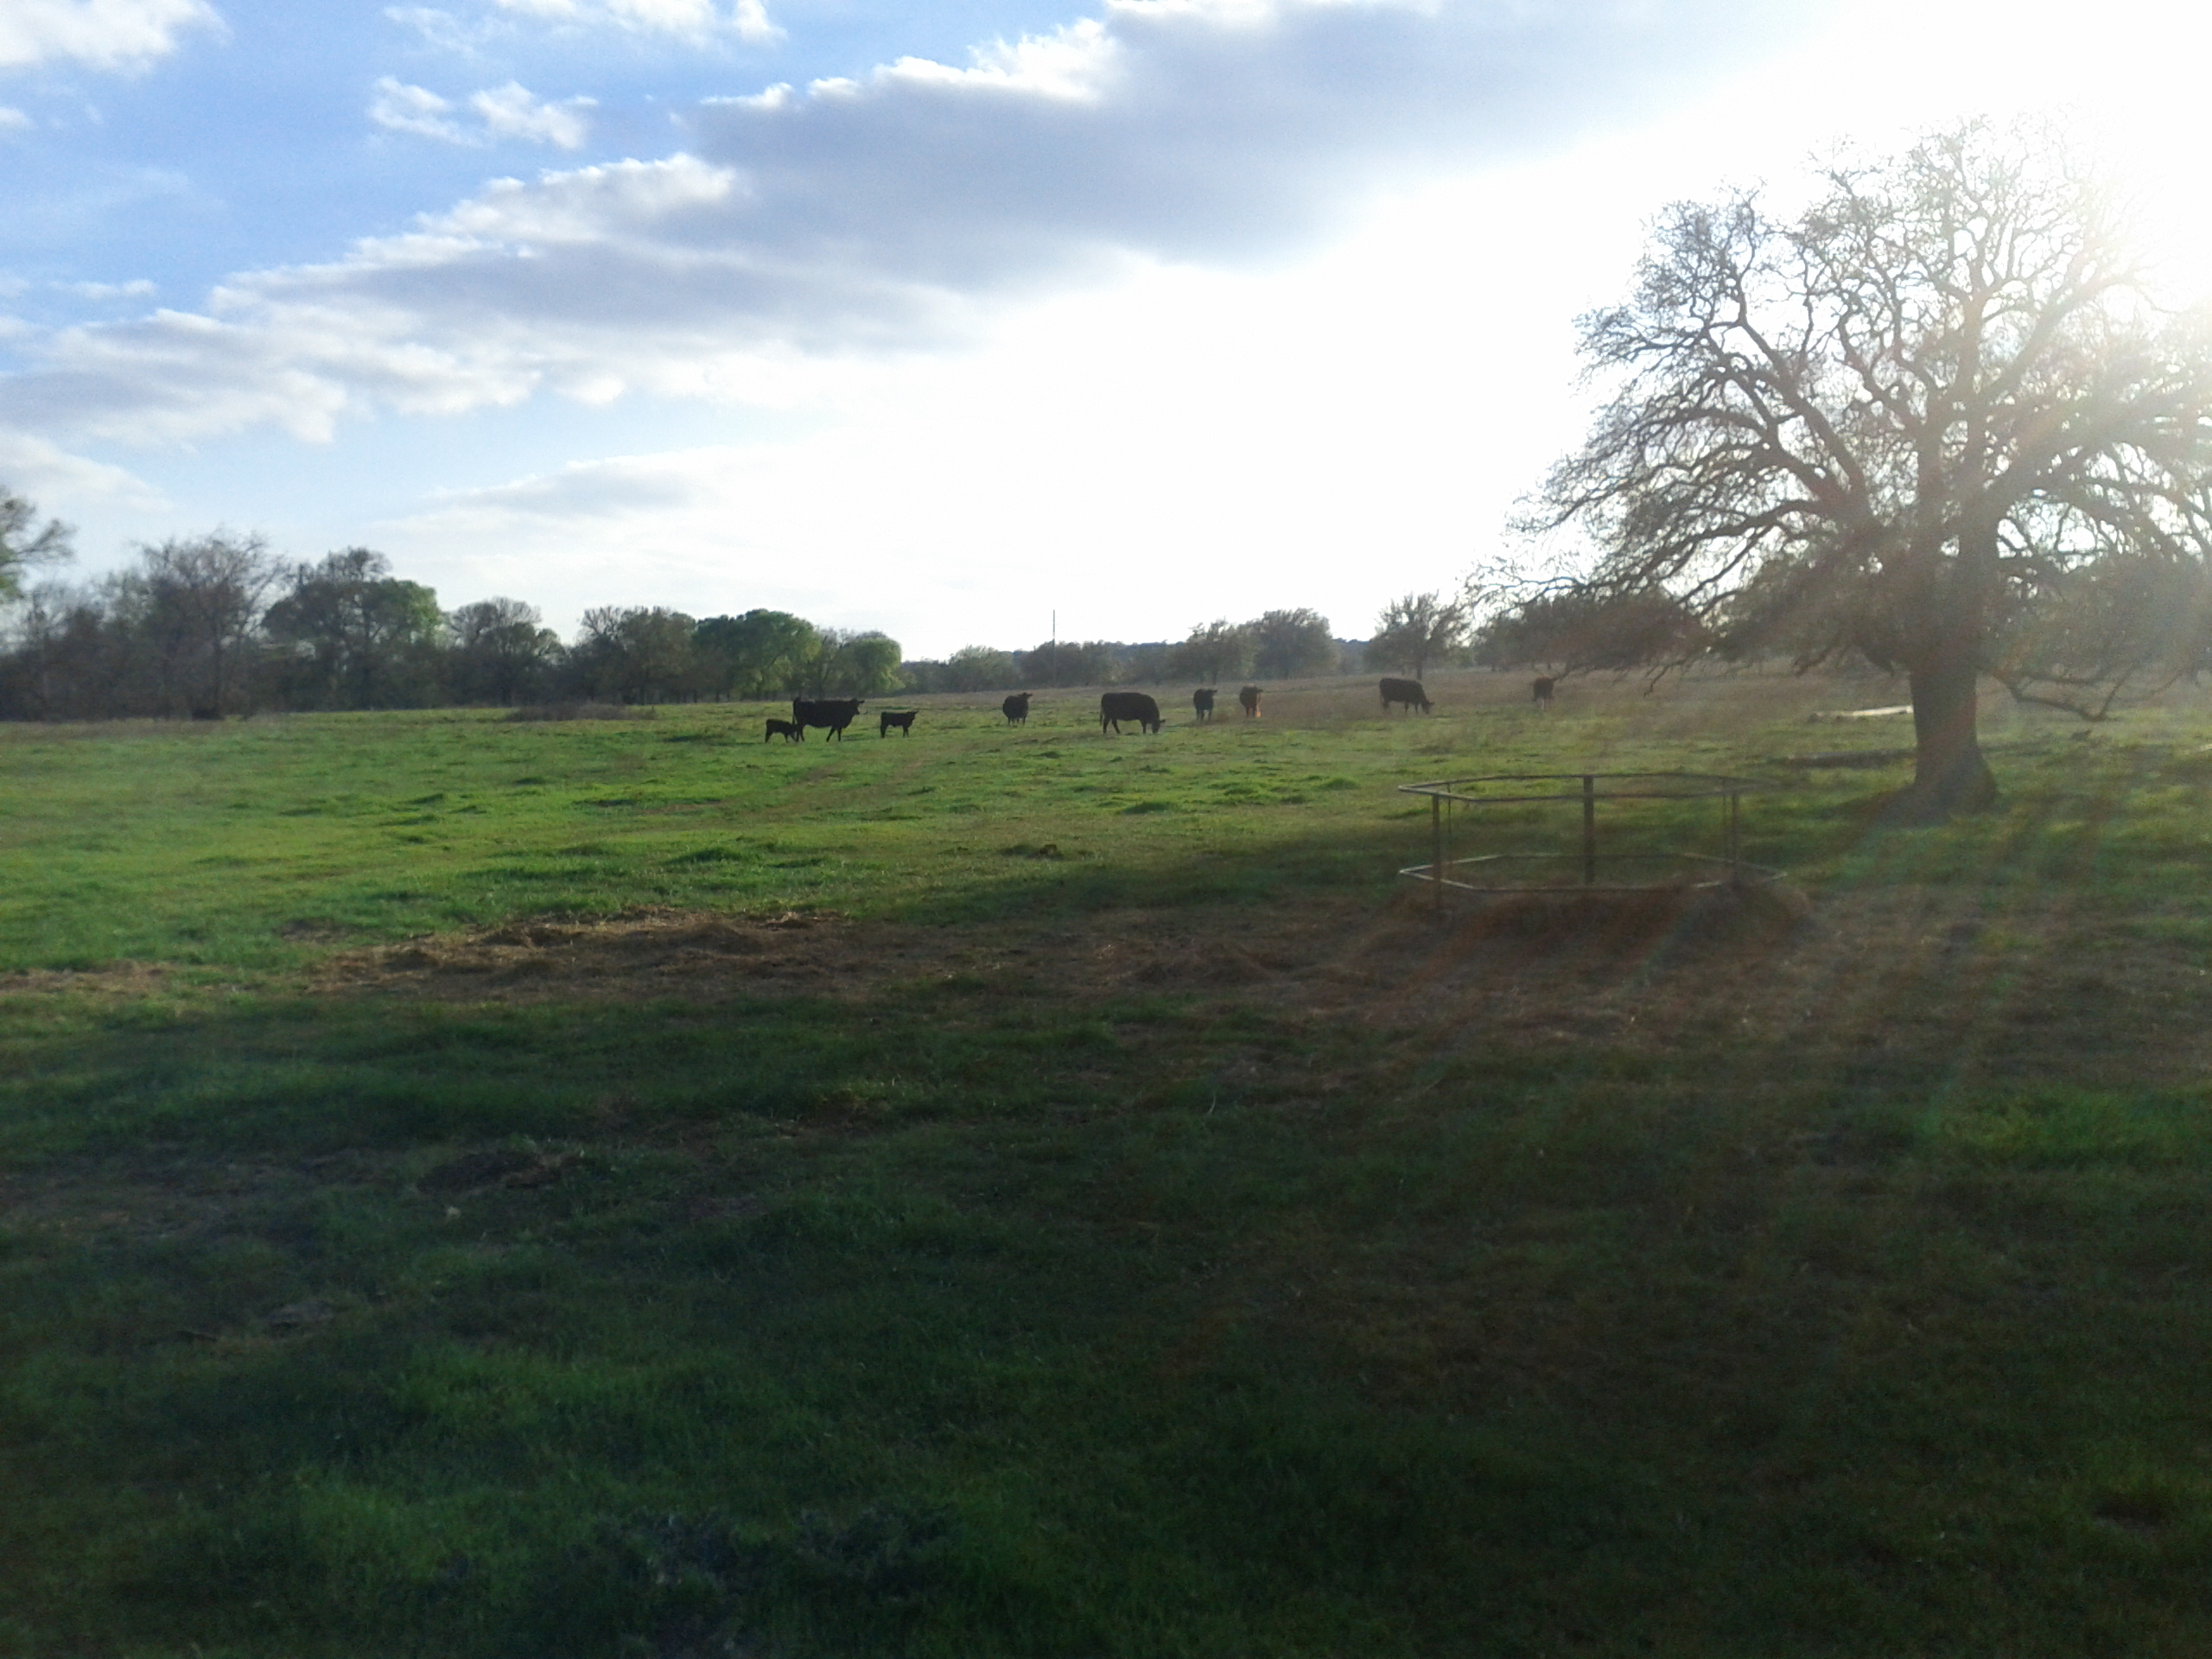 herd grazing in distance